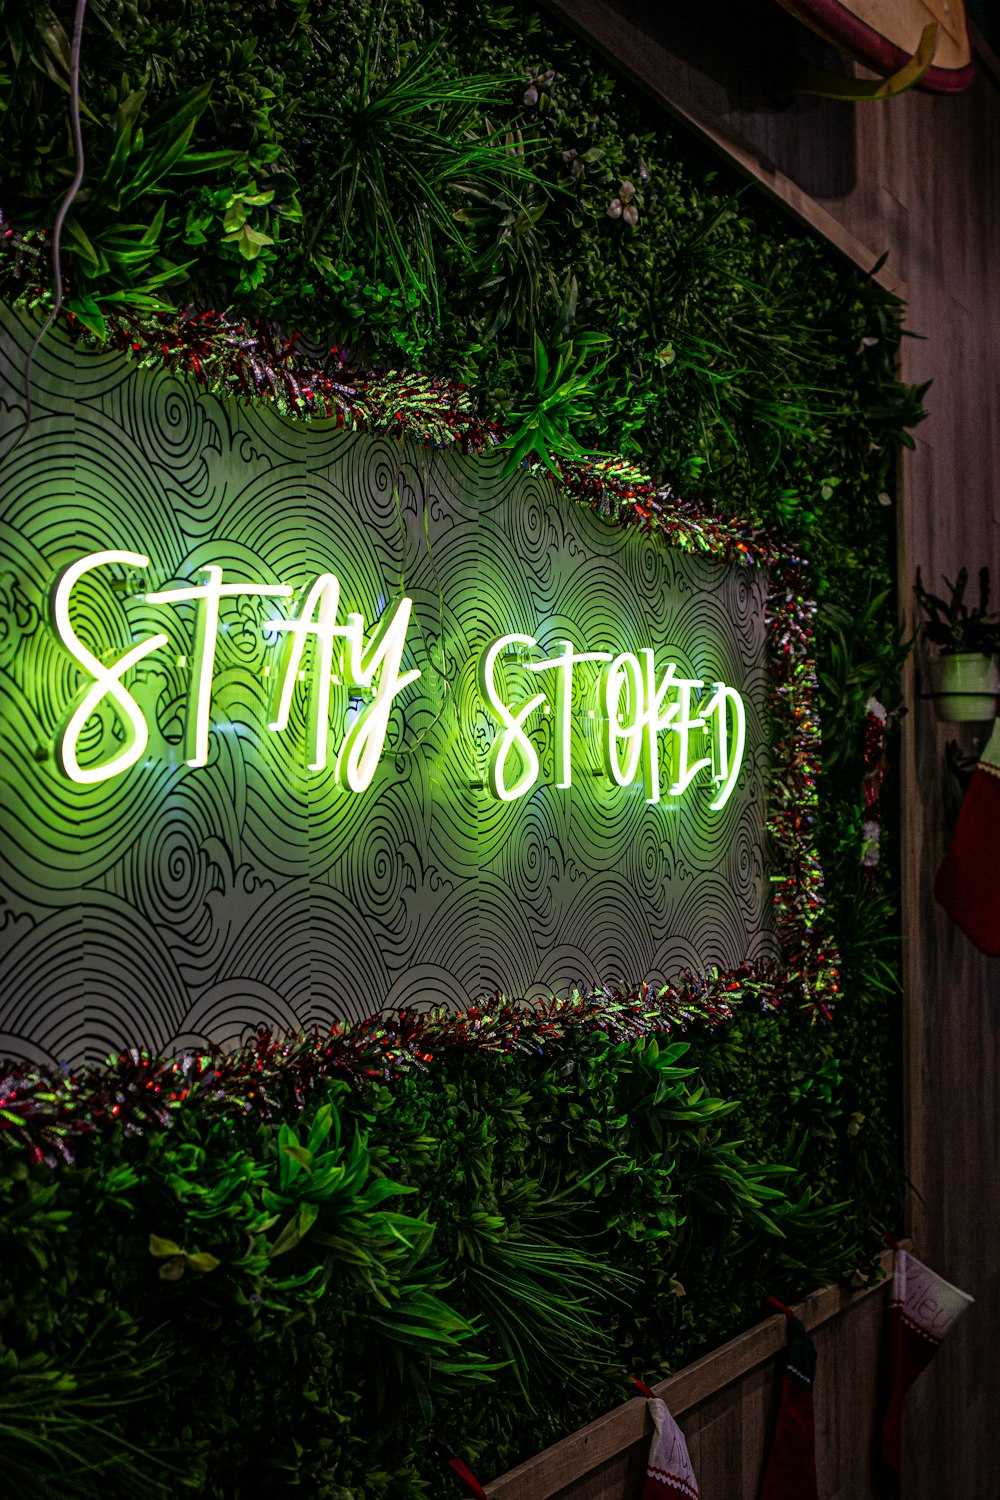 緑の壁に「ステイストップ」というネオンサイン